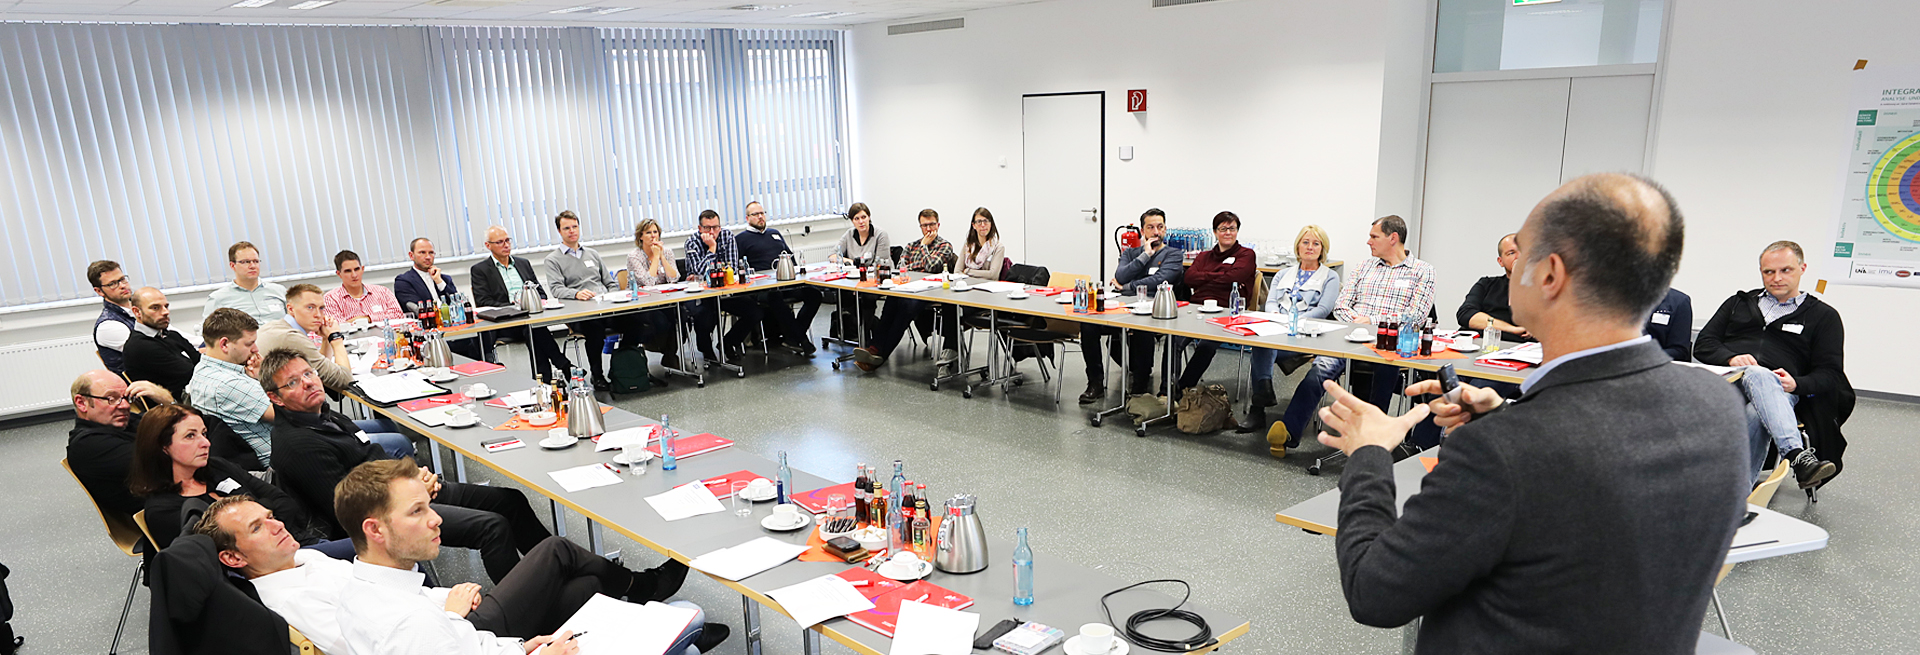 Seminar «Strategisches Management und Führungskultur einfach erklärt» in Göppingen